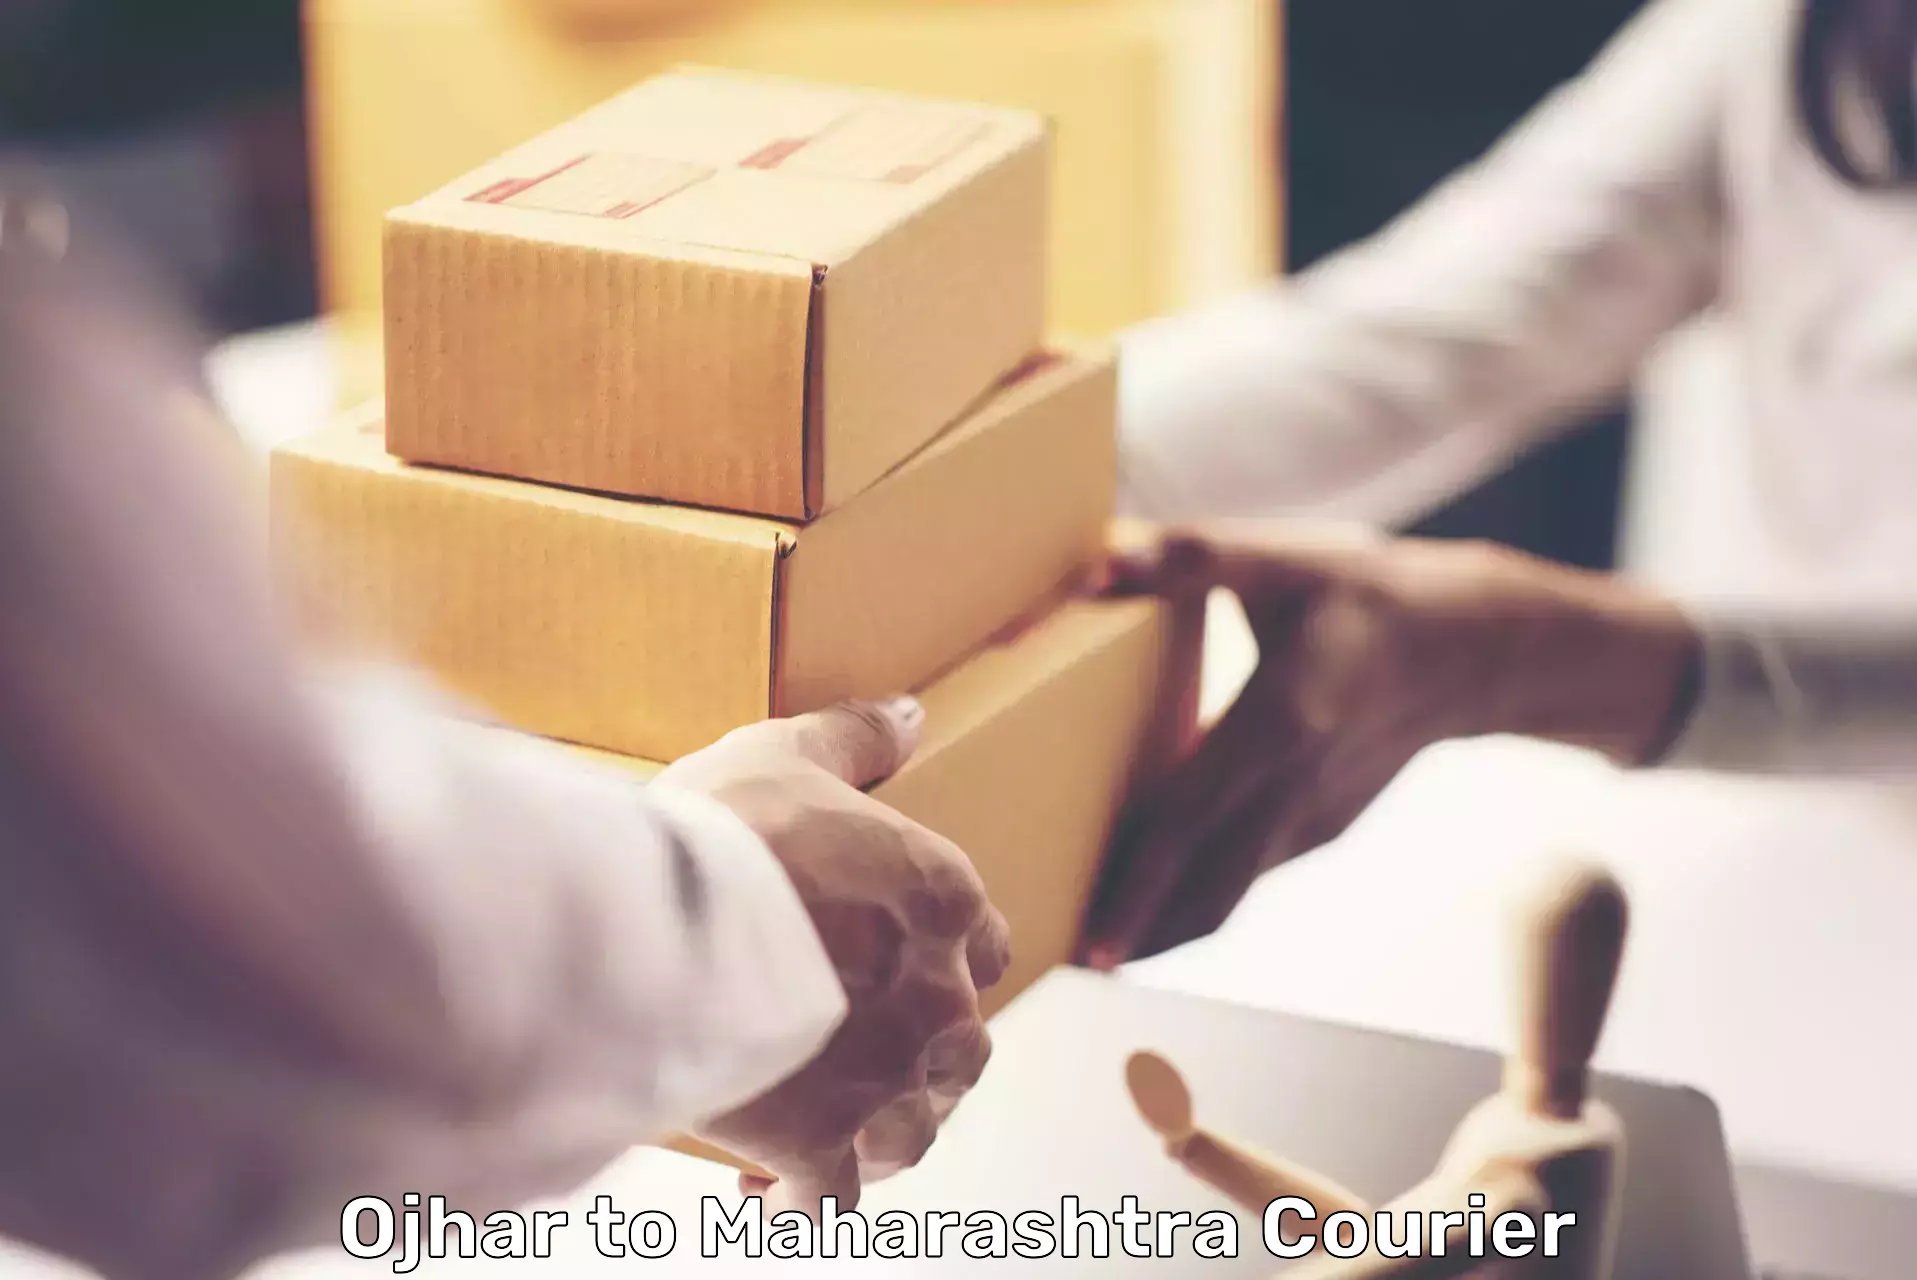 Efficient parcel tracking Ojhar to Jamner